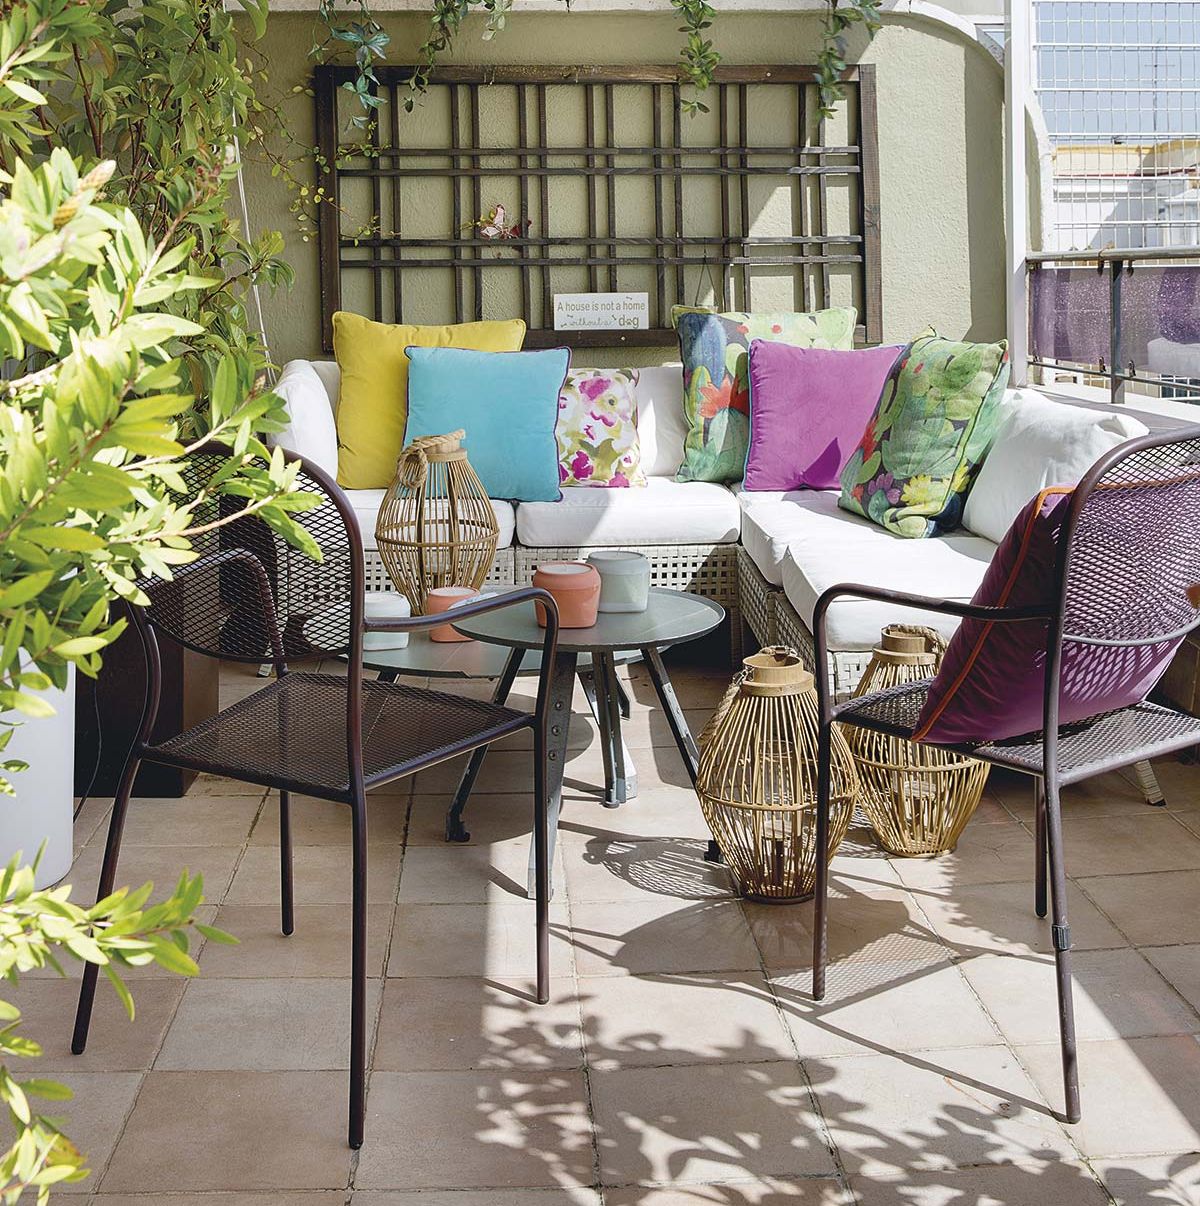 Parpadeo Experto interior 15 Ideas para decorar la terraza o el jardín con gusto y estilo